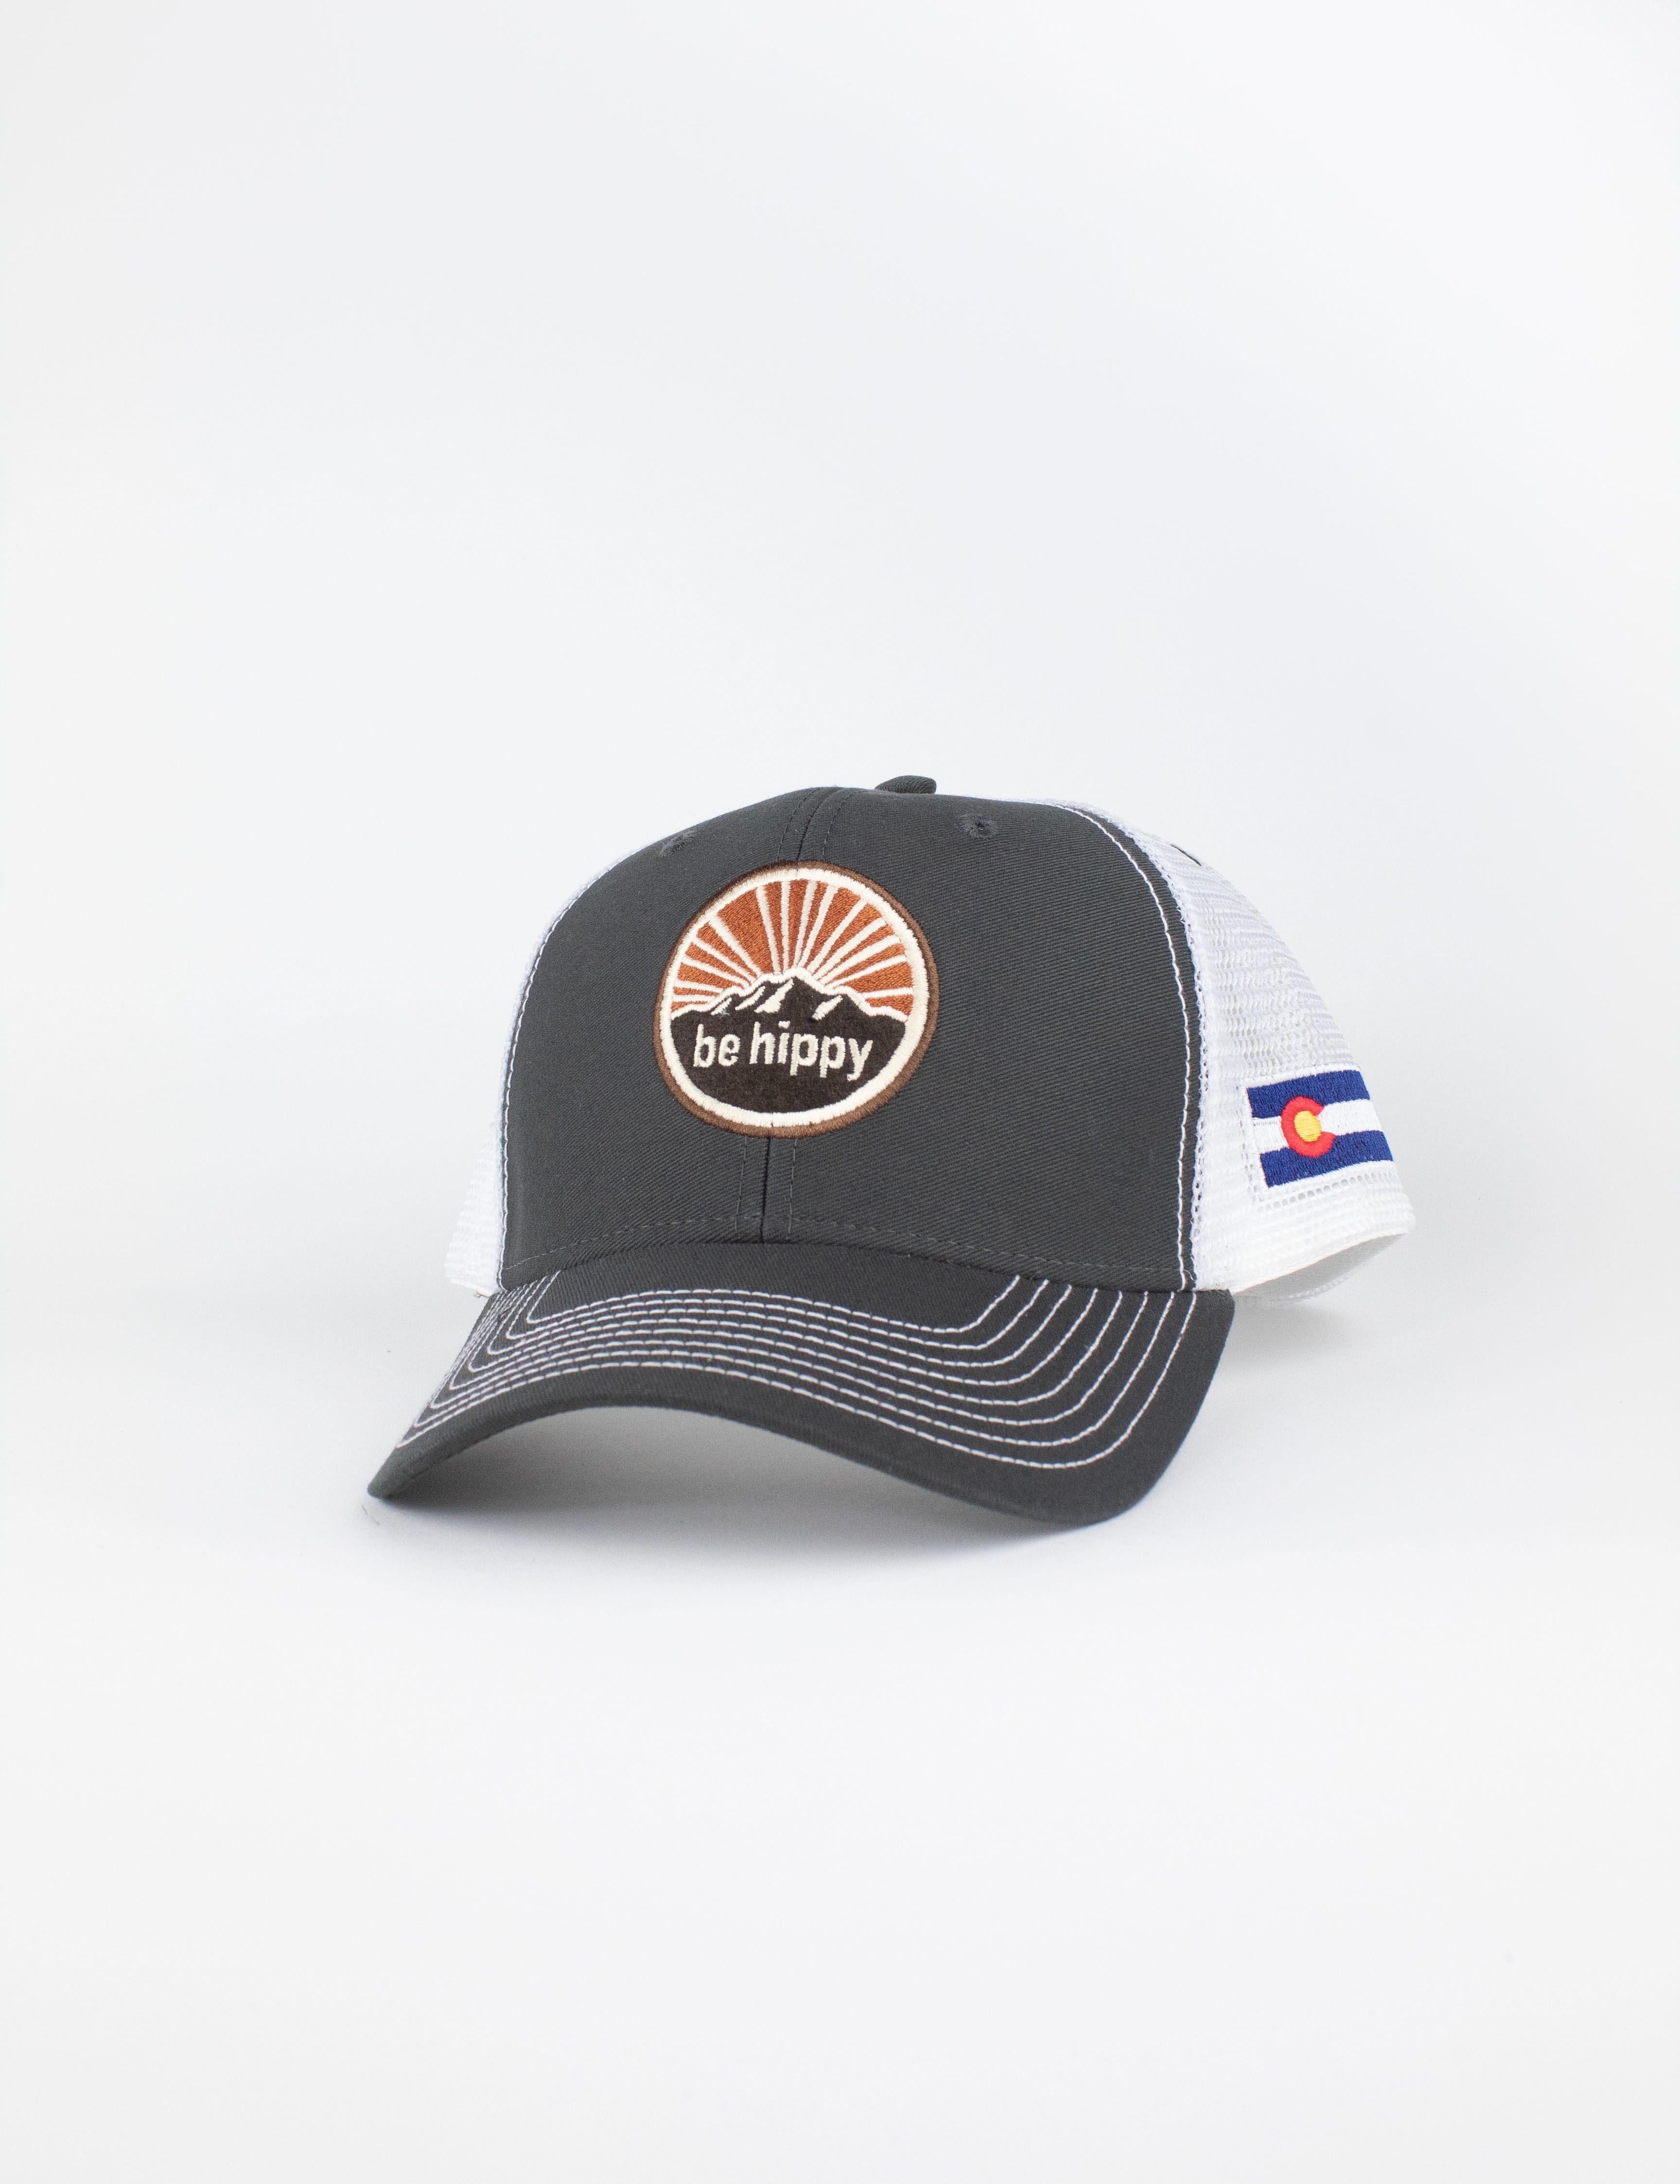 Colorado Mountain Logo - Mountain Logo Trucker Hat - Colorado Flag | be hippy